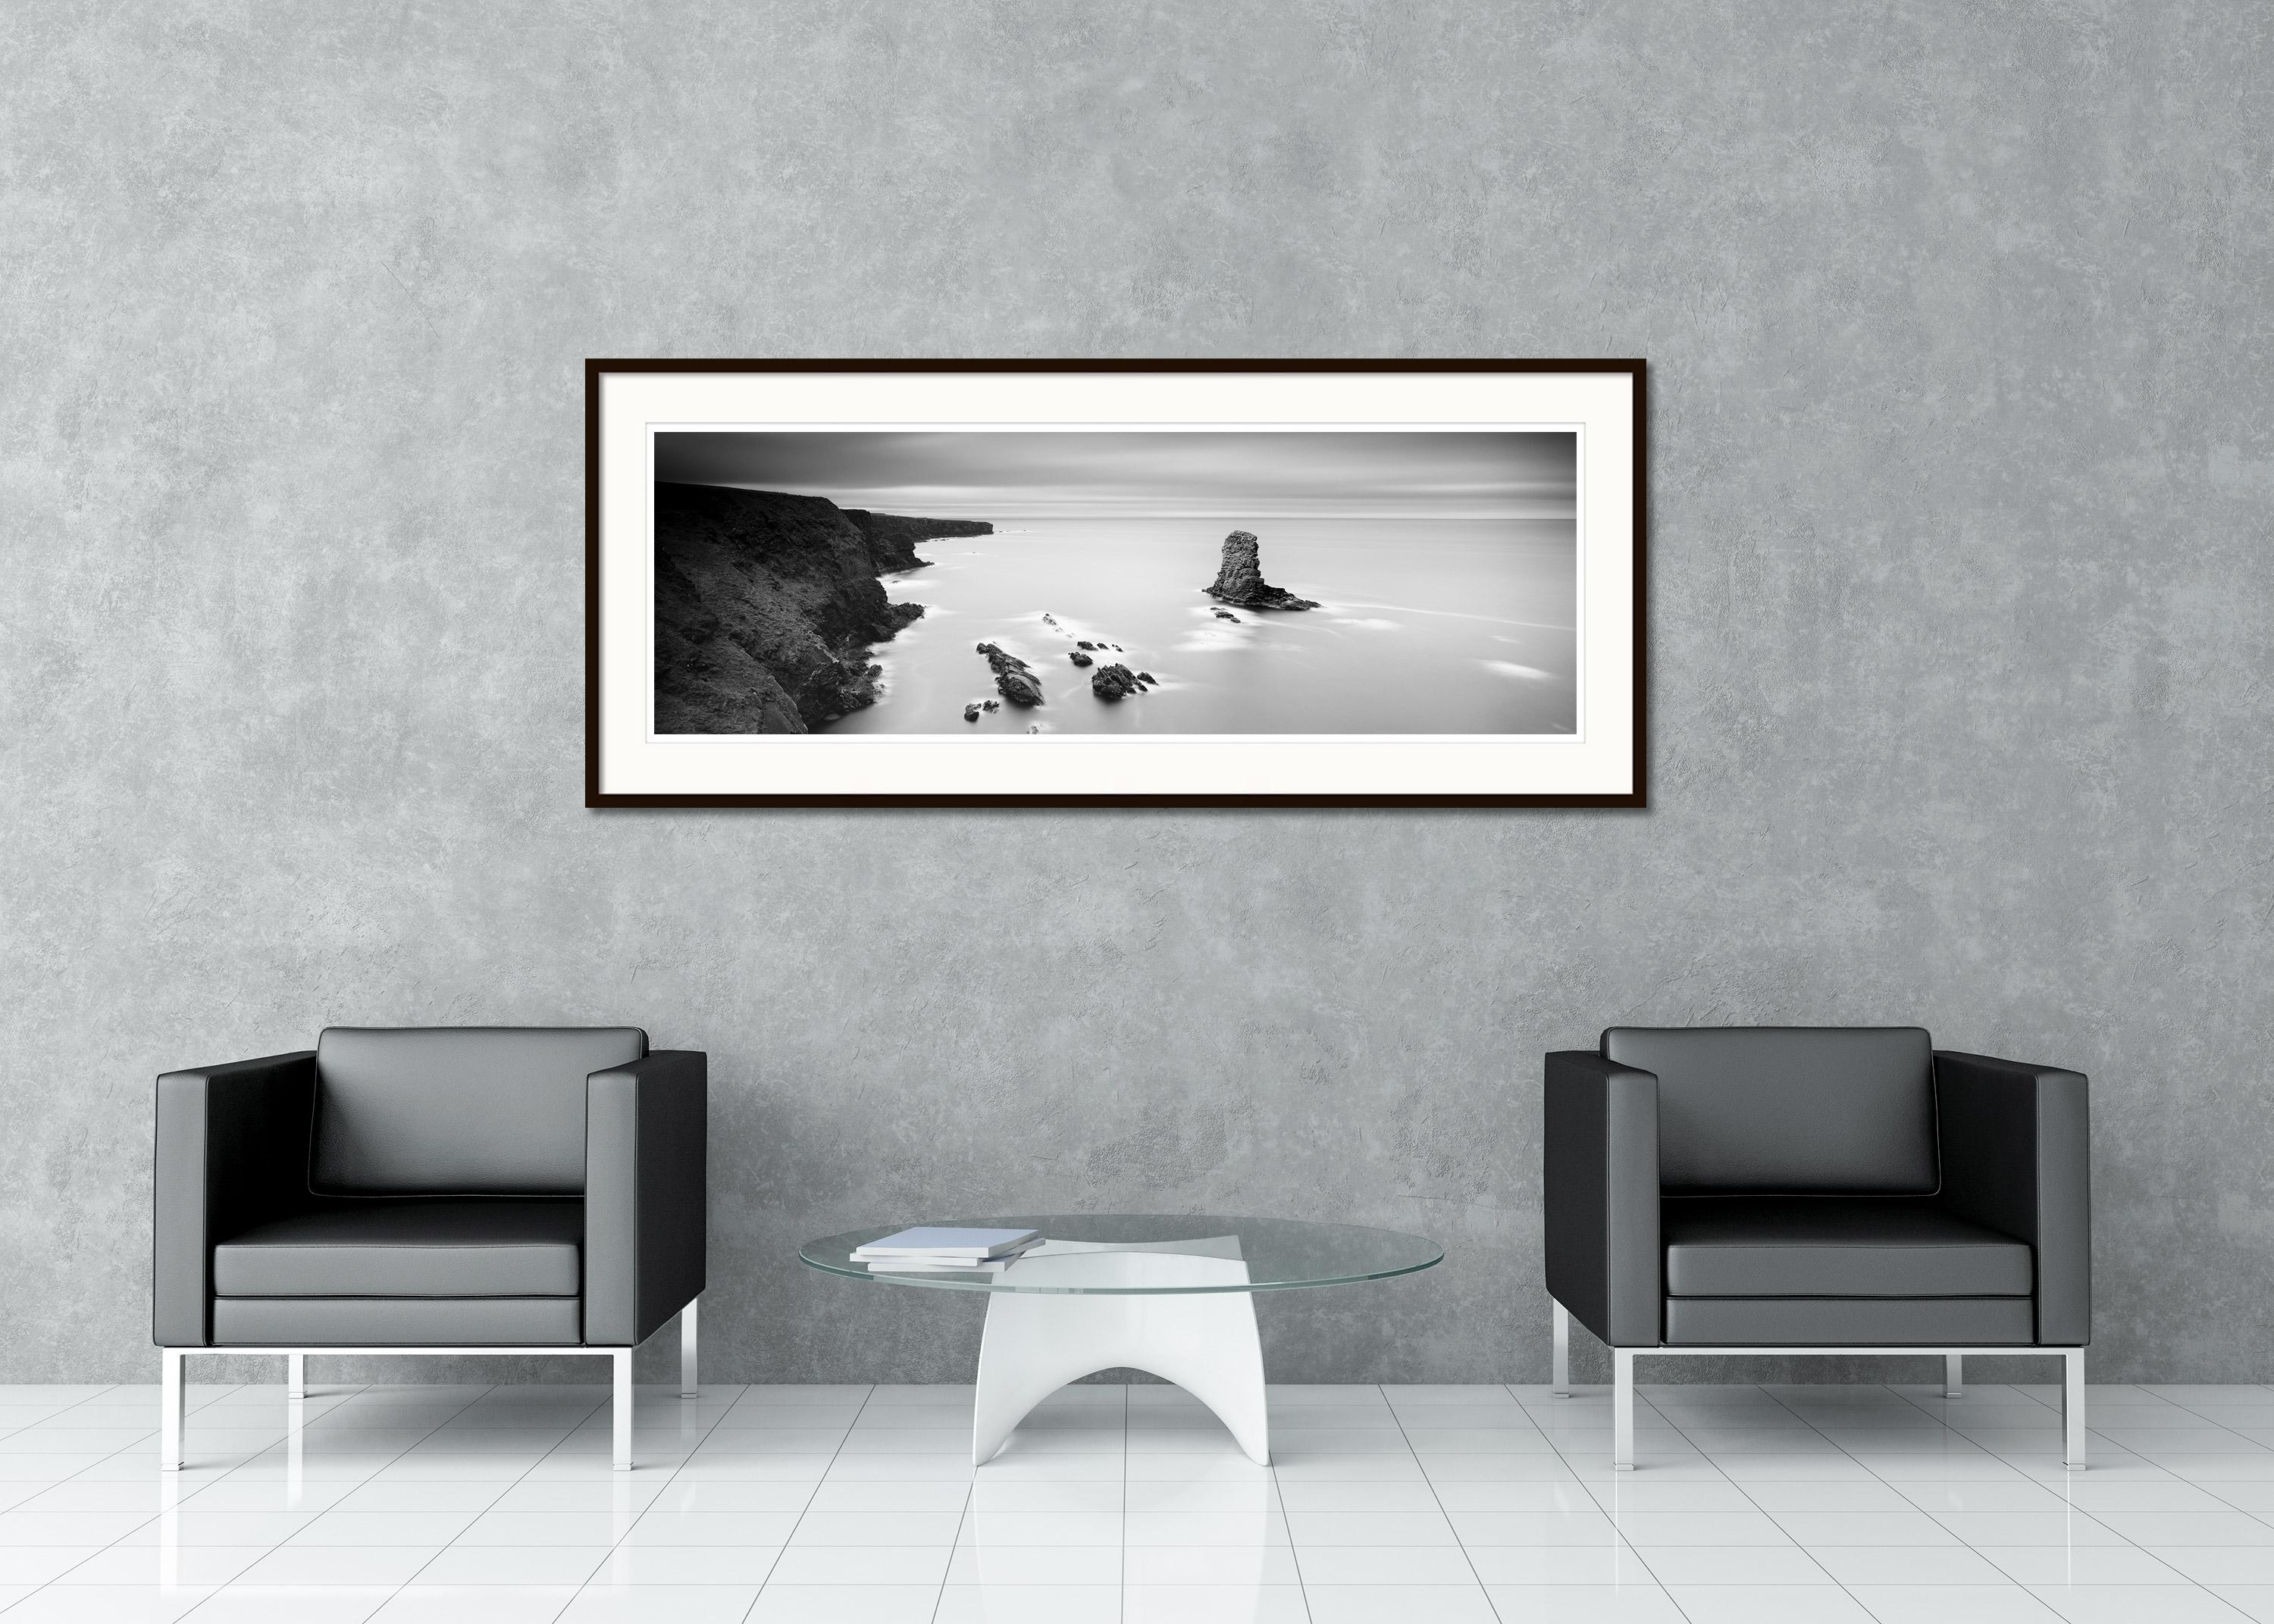 Black and White Fine Art Photography - Beeindruckendes Küstenpanorama der irischen Klippen mit kleinen Inseln. Pigmenttintendruck, Auflage 9, signiert, betitelt, datiert und nummeriert vom Künstler. Mit Echtheitszertifikat. Bedruckt mit einem 4 cm